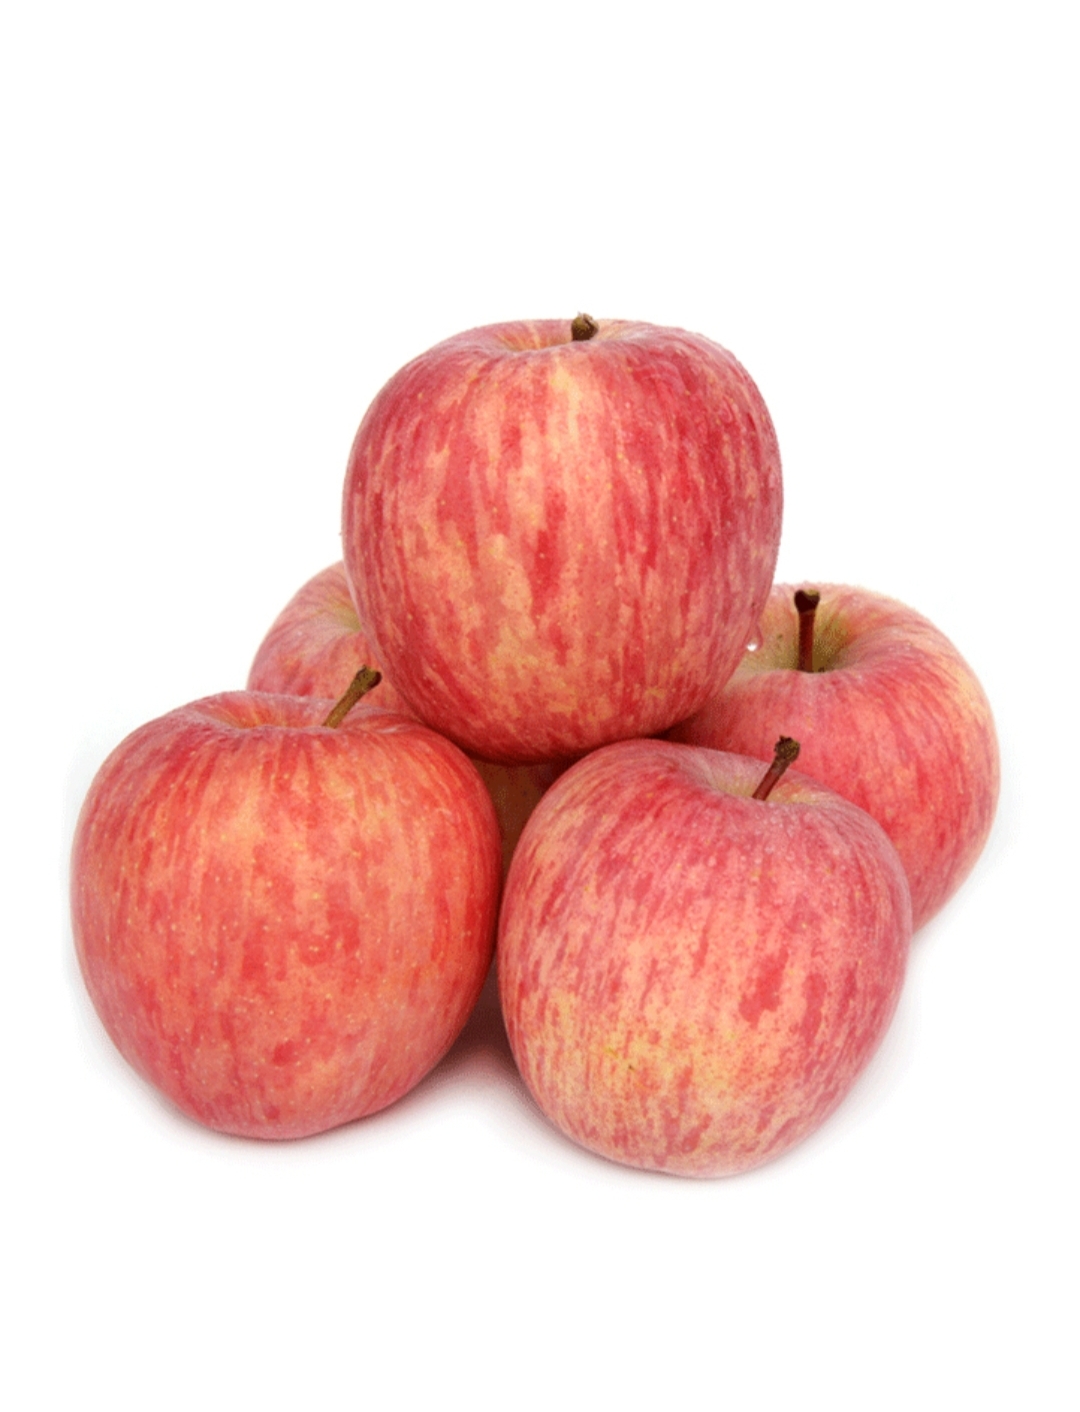 洛川苹果陕西延安高原红富士现摘新鲜脆甜超大号一级水果